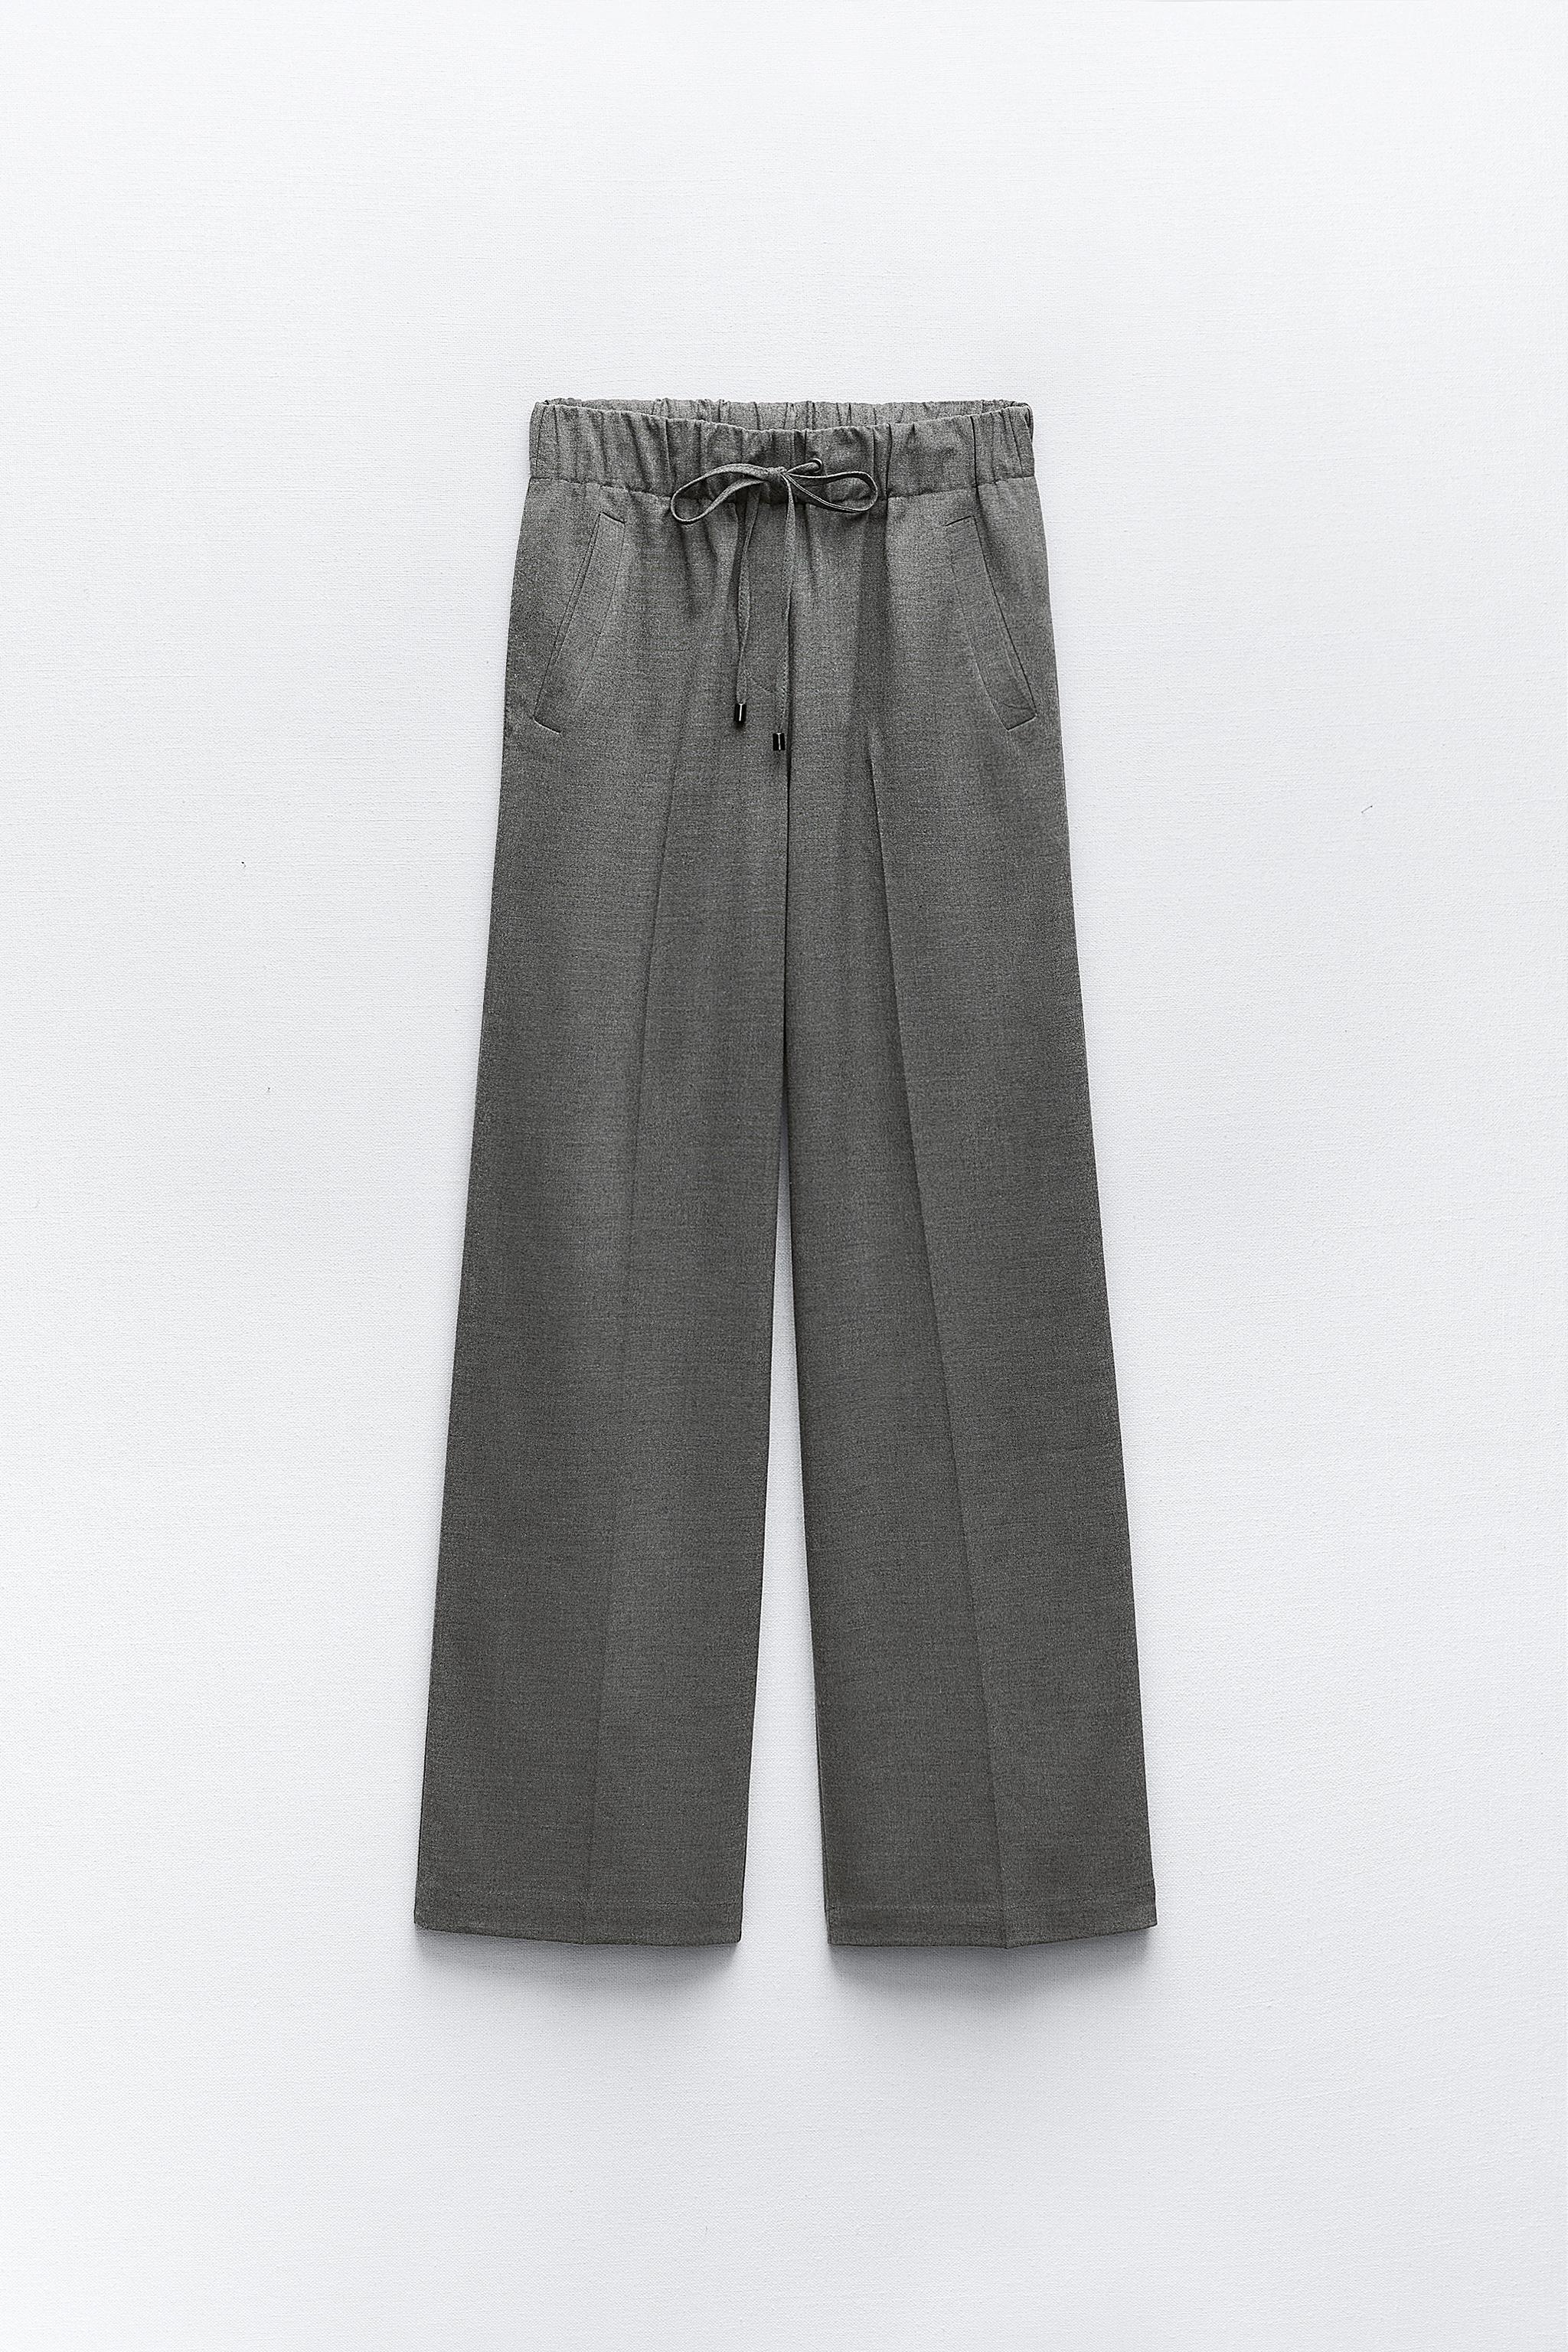 NWT Zara Grey Pants XL